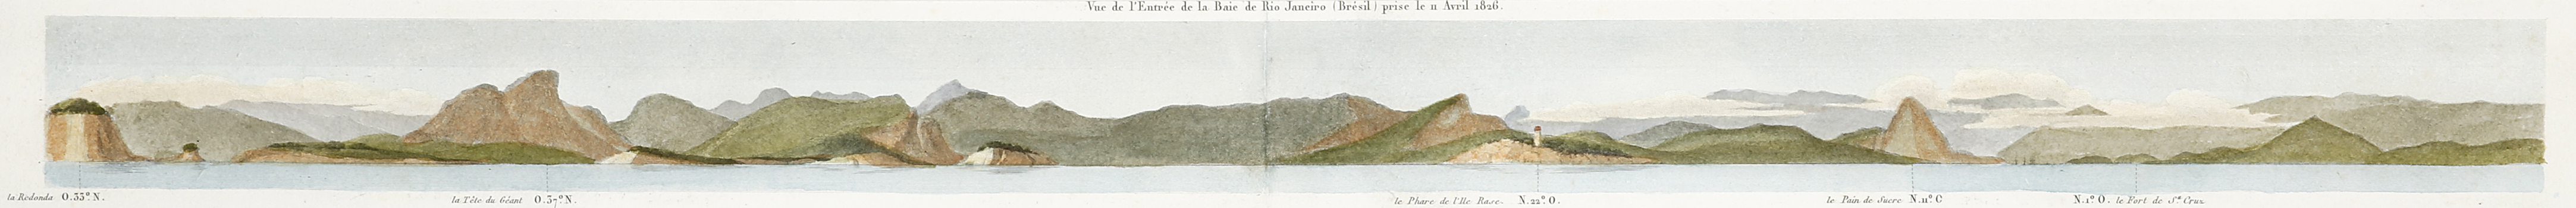 Vue de l'Entrée de la Baie de Rio Janeiro (Brésil) prise le 11 Avril 1826. - Antique View from 1837